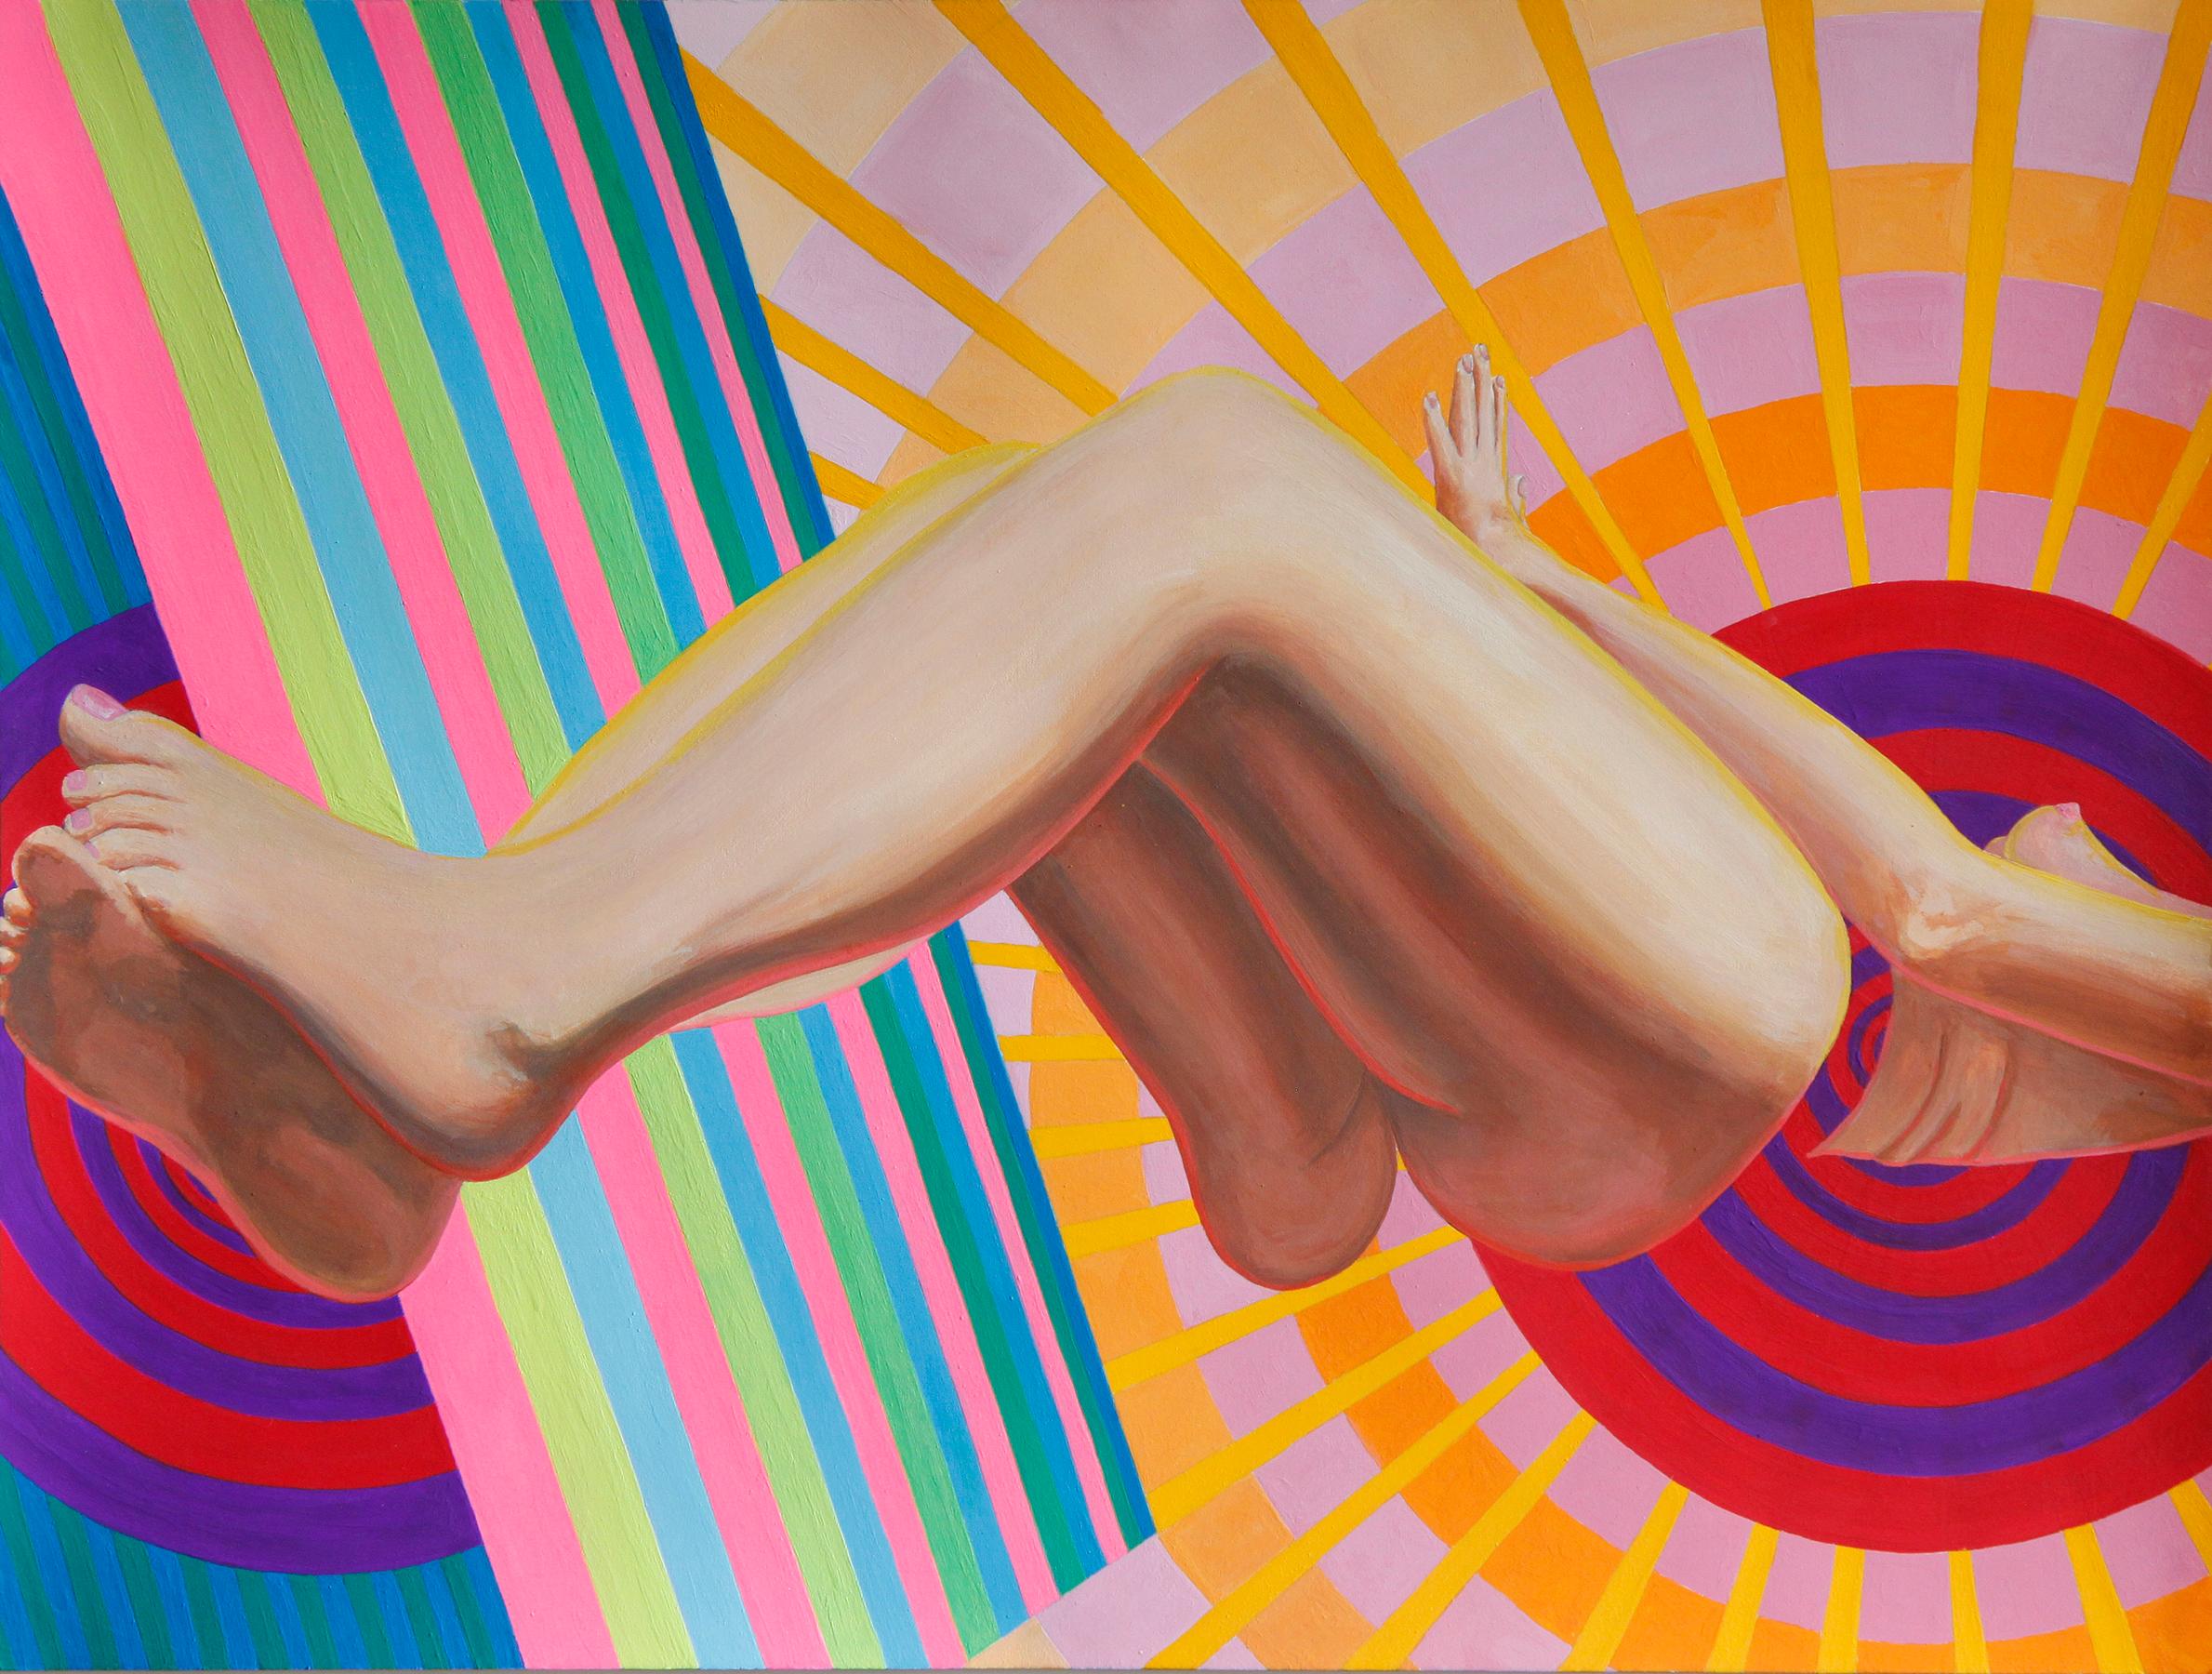 Abstract Painting Emily Roz - "Radiator" Peinture d'art optique contemporain avec figure féminine